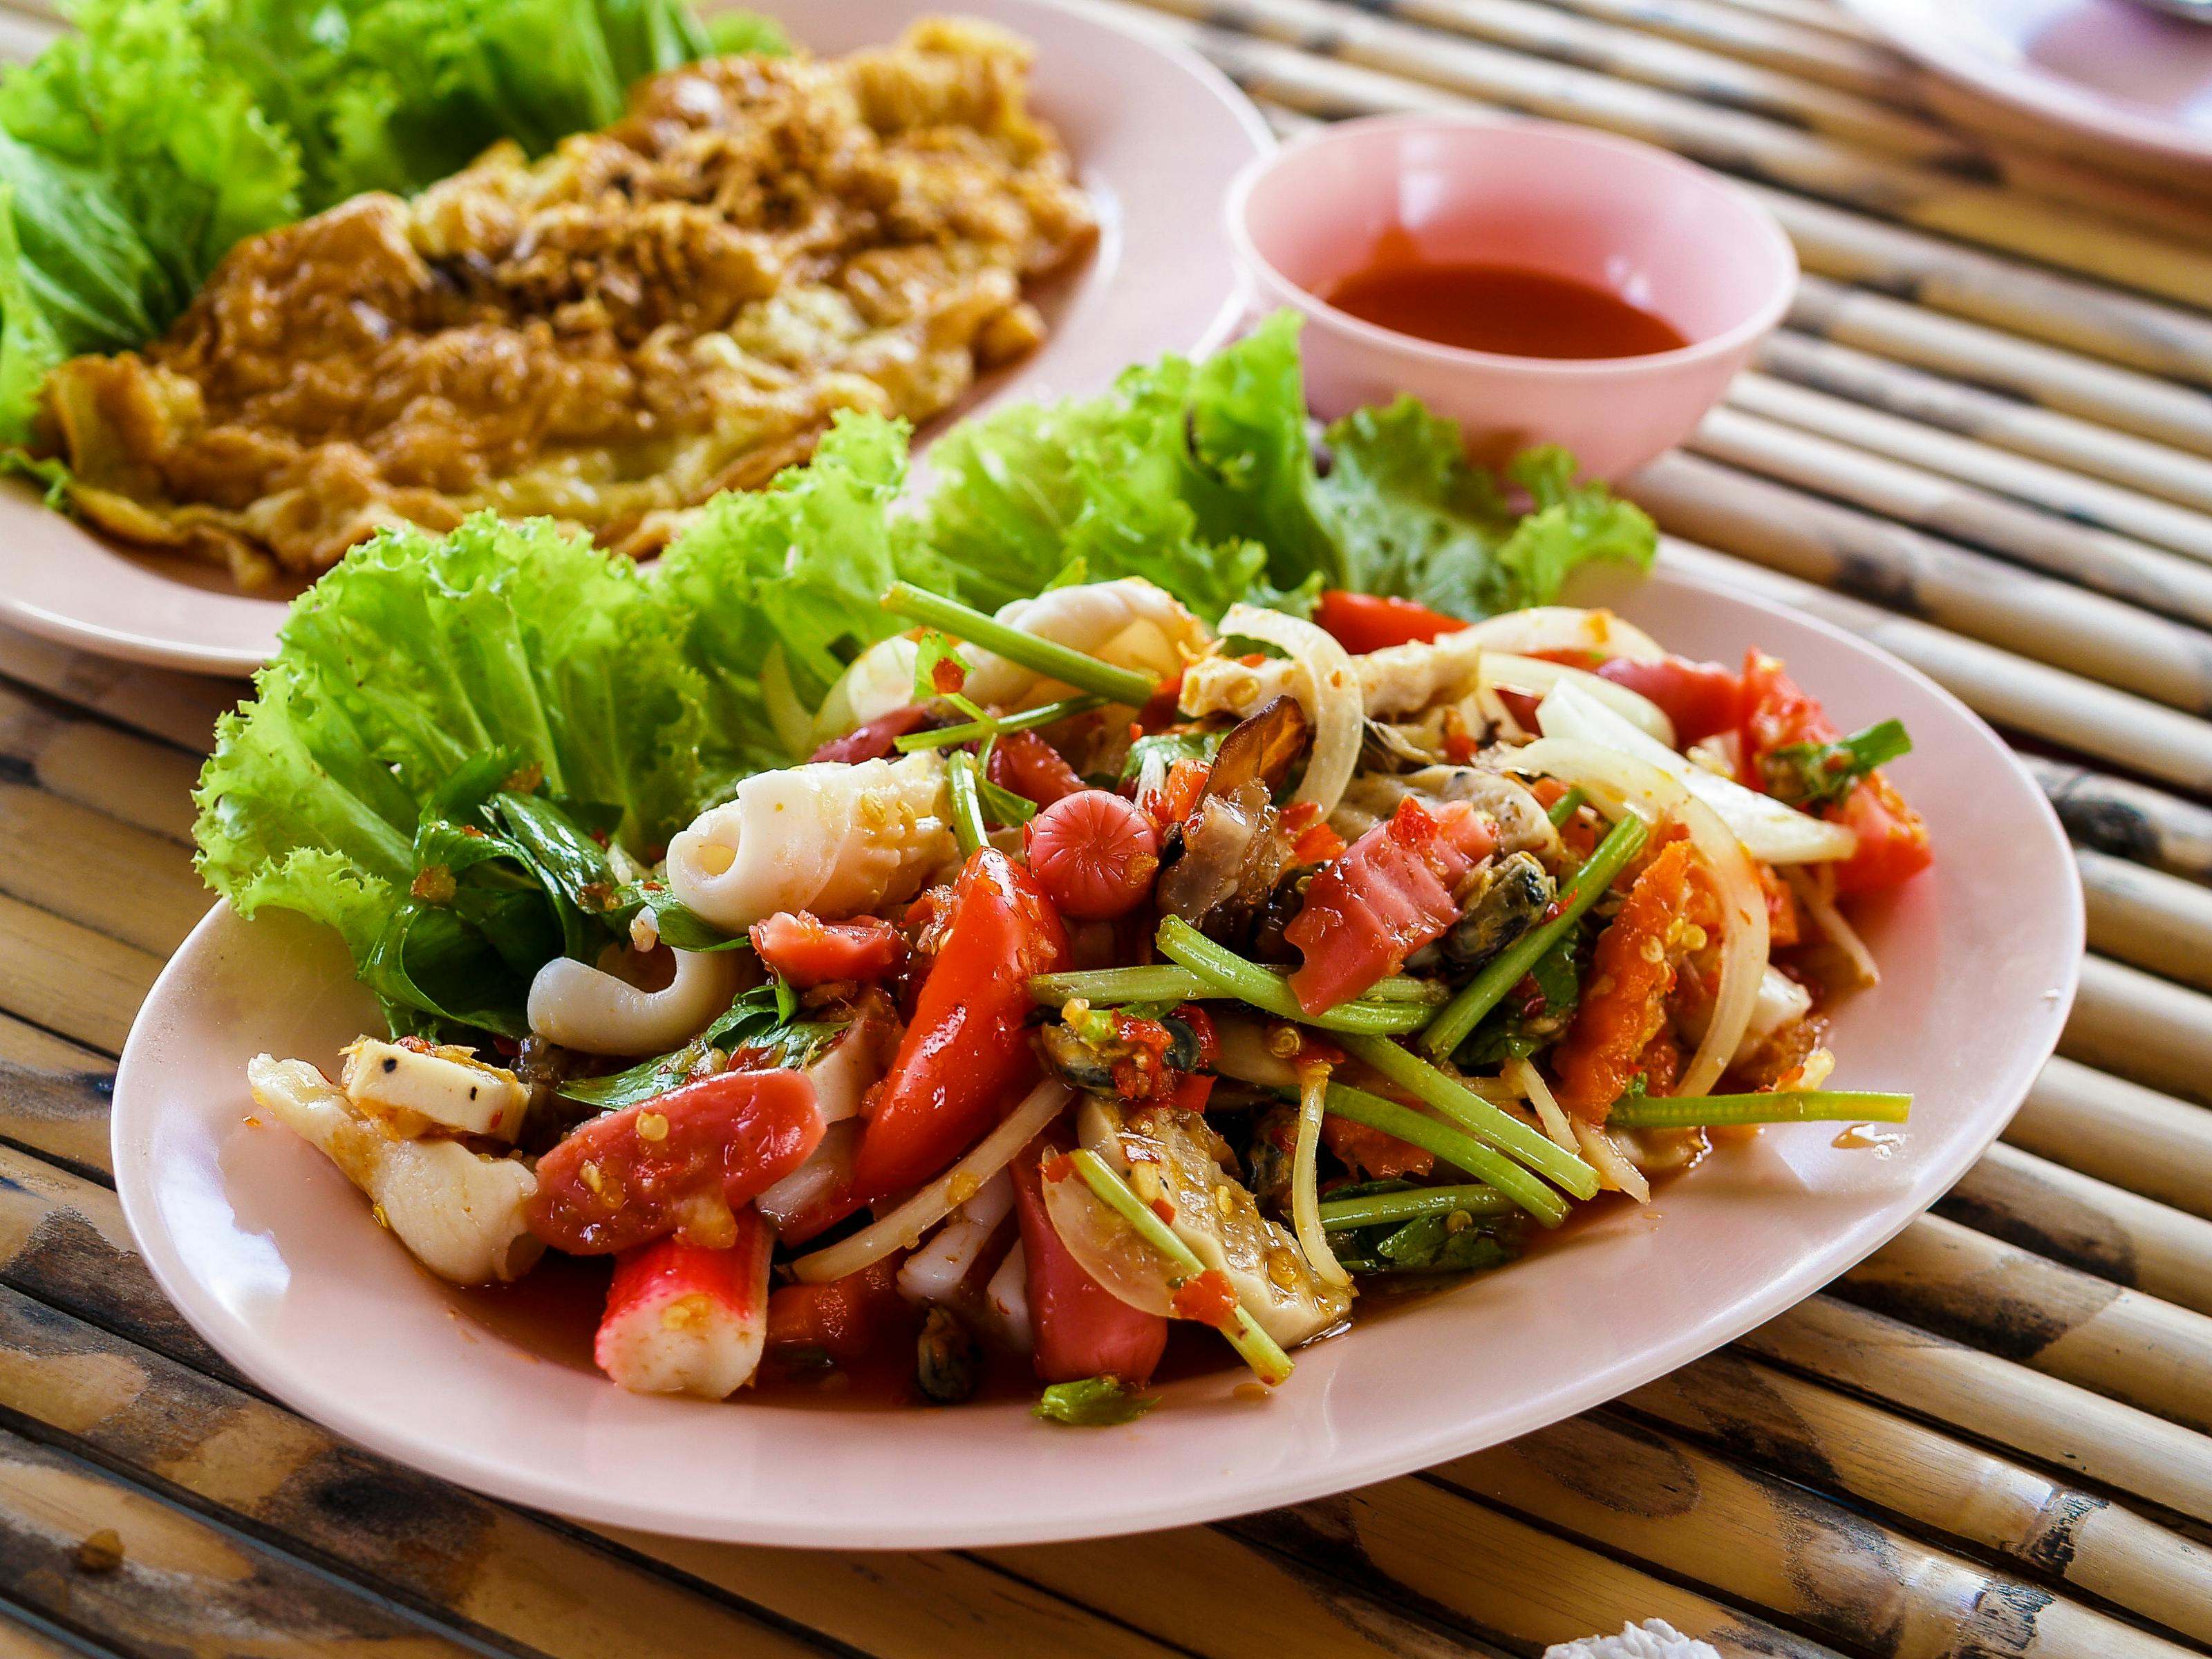 Kostenloses Foto zum Thema: abendessen, appetizer, asiatisches essen